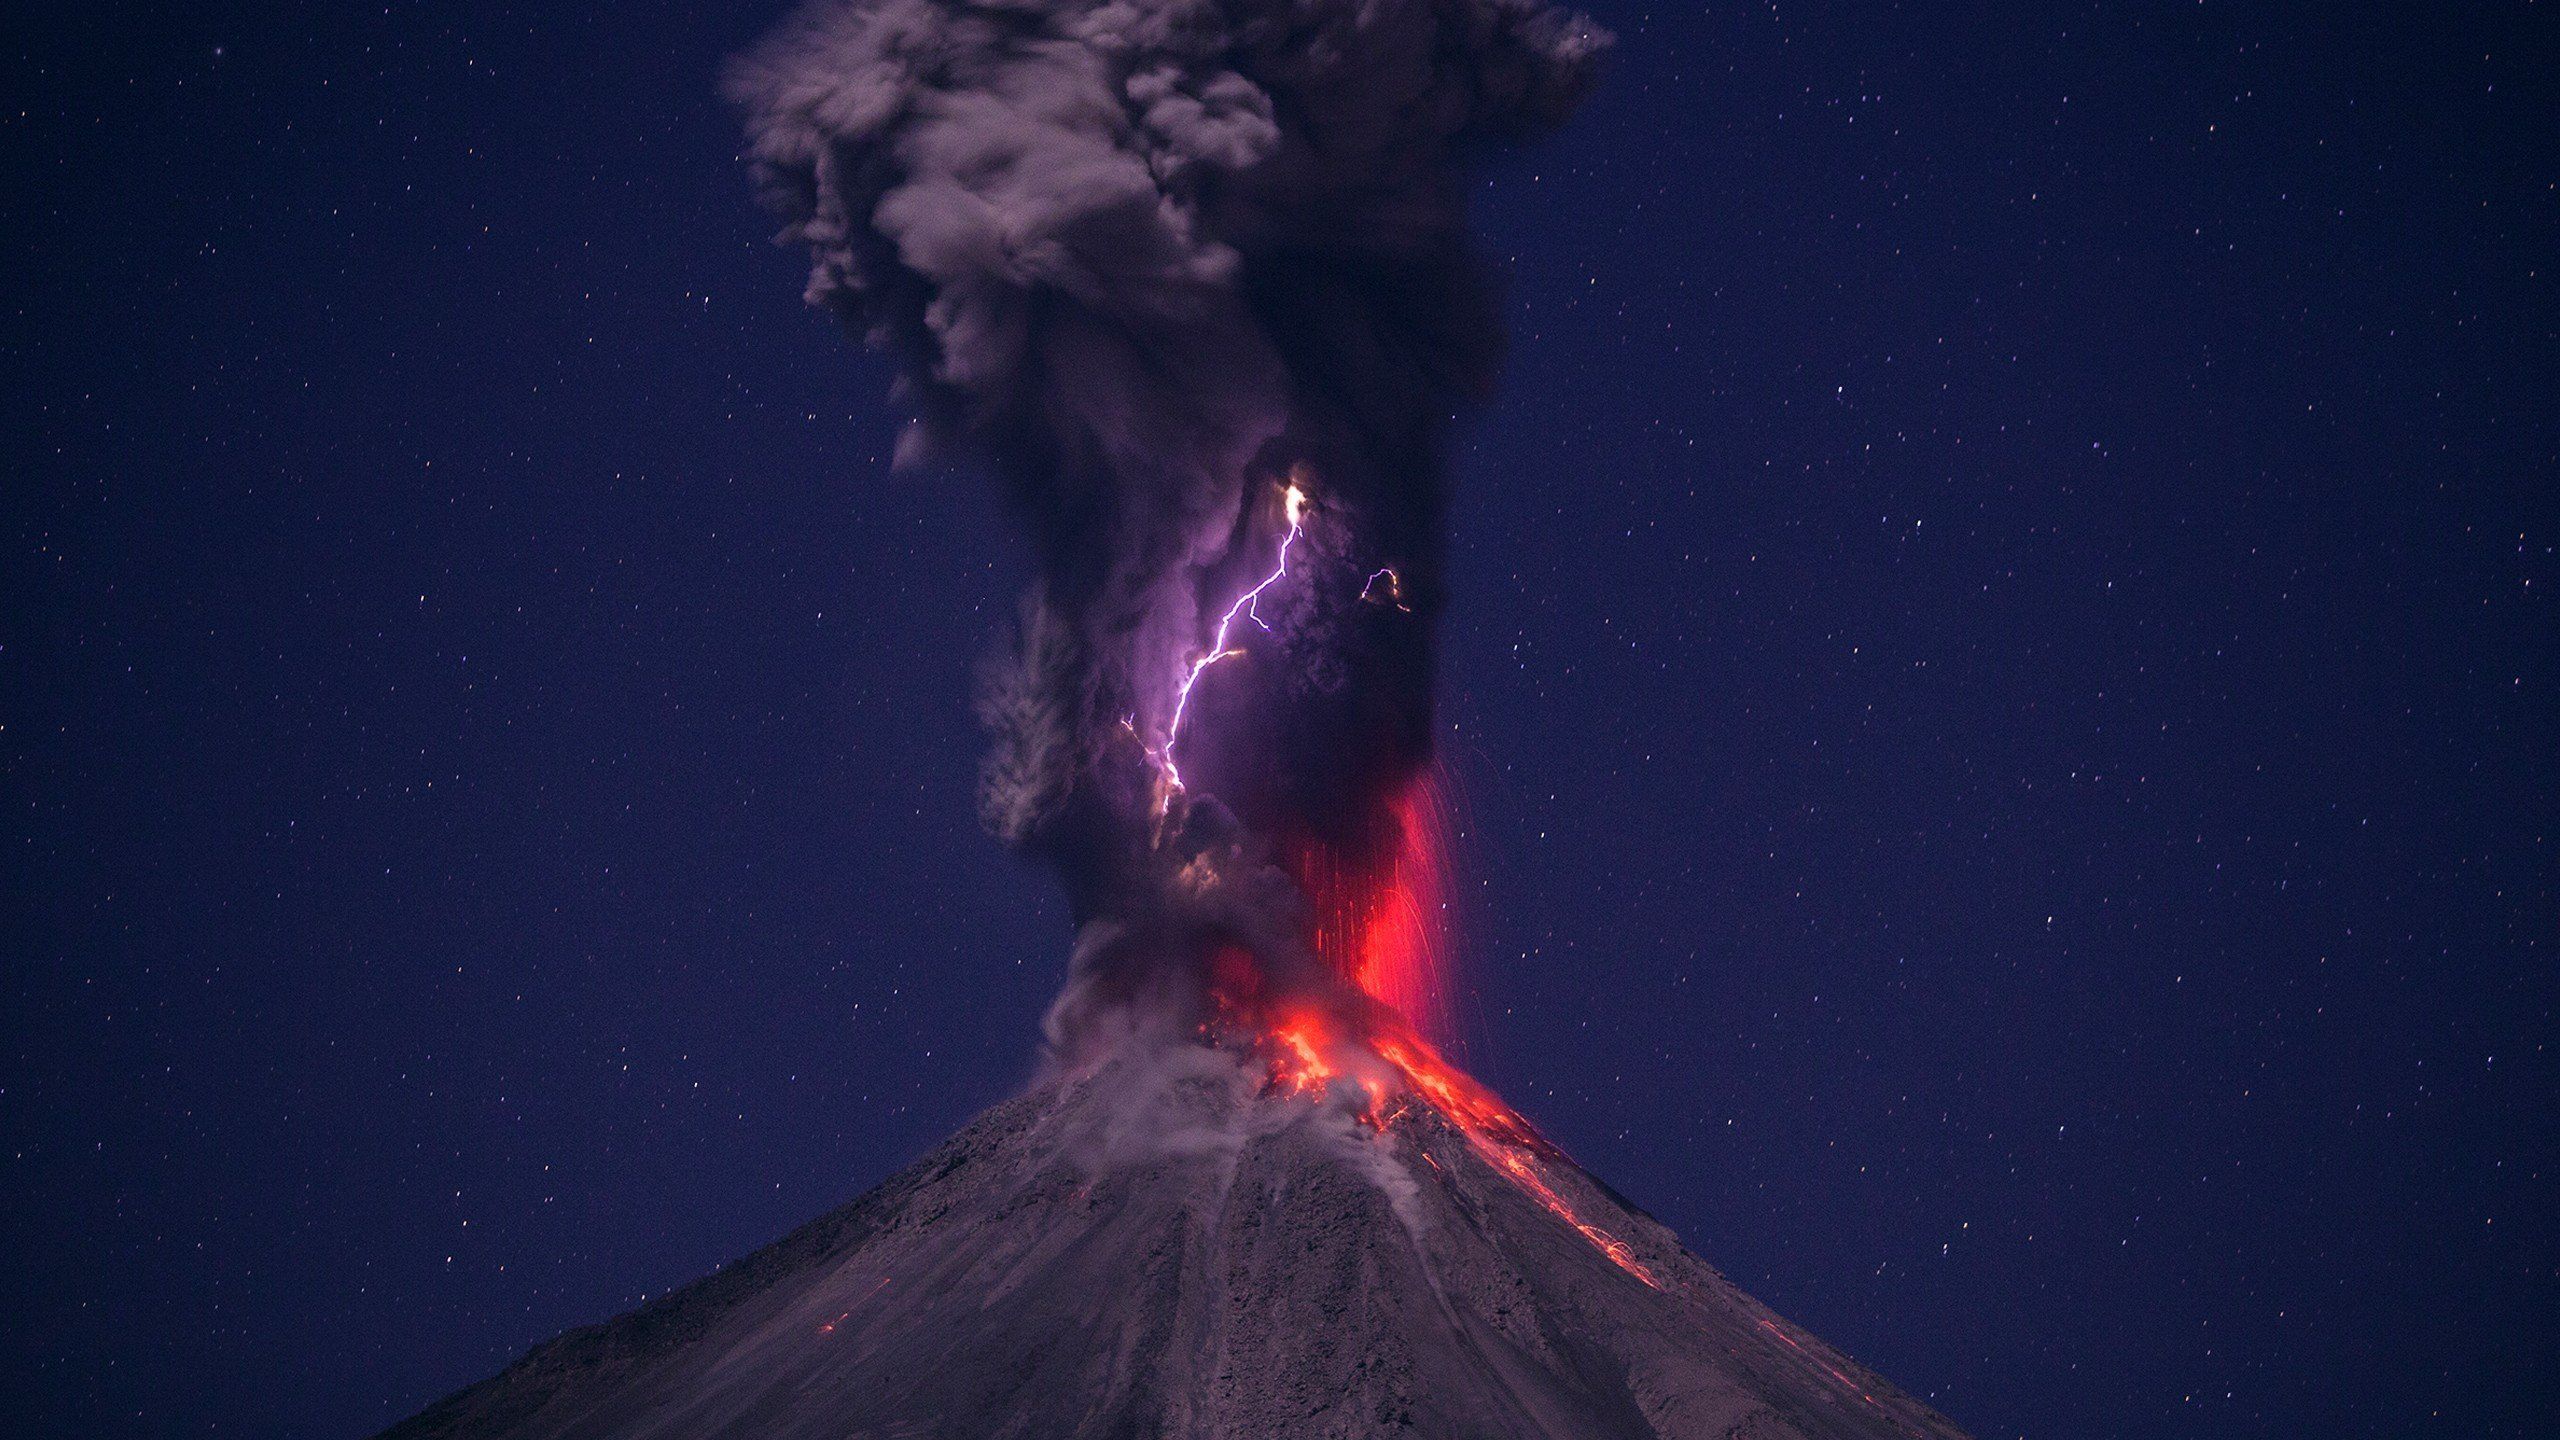 عکس پروفایل فانتزی فوران کوه آتشفشان و آسمان خوشگل شب